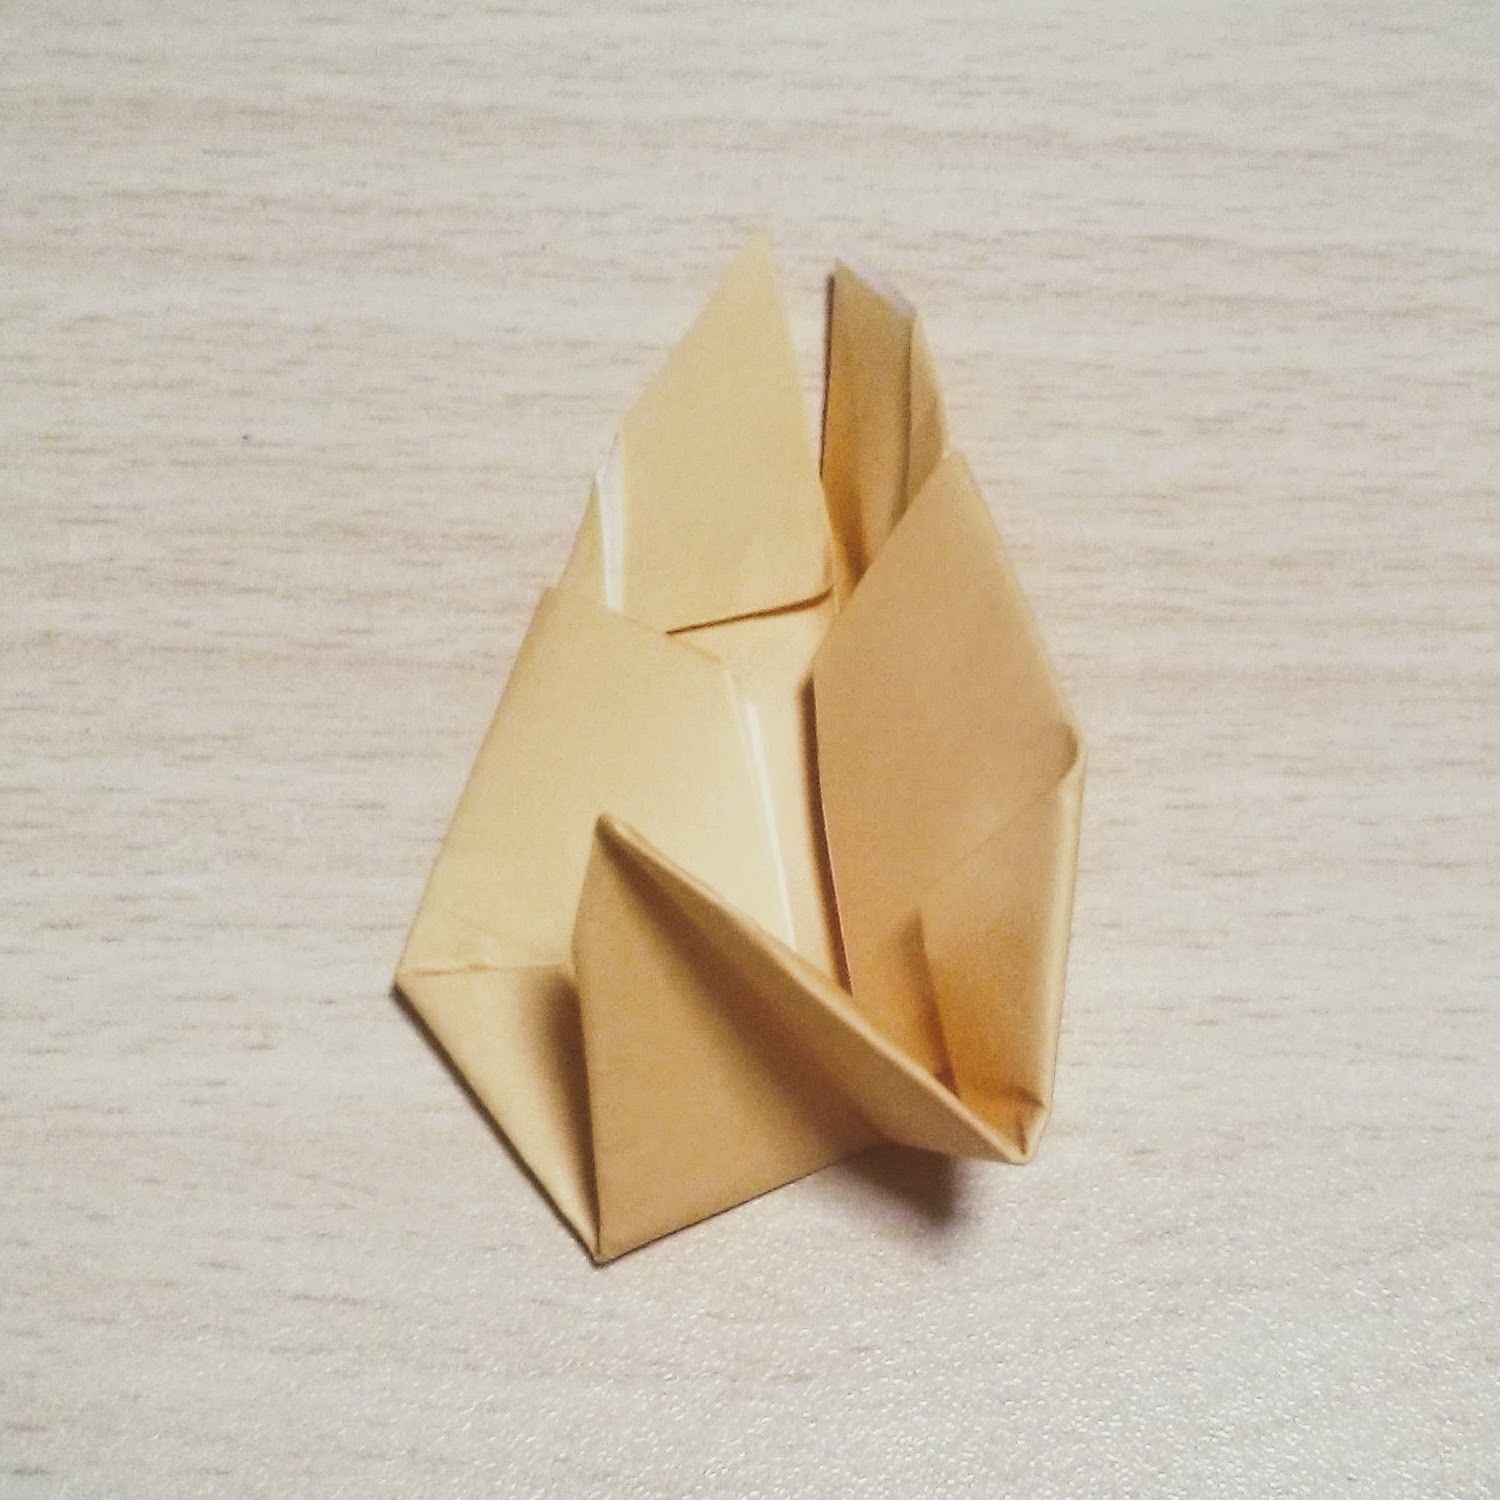 ジブリキャラクター トロロ の折り紙での折り方 平面 立体の作り方まとめ 3ページ目 暮らし の